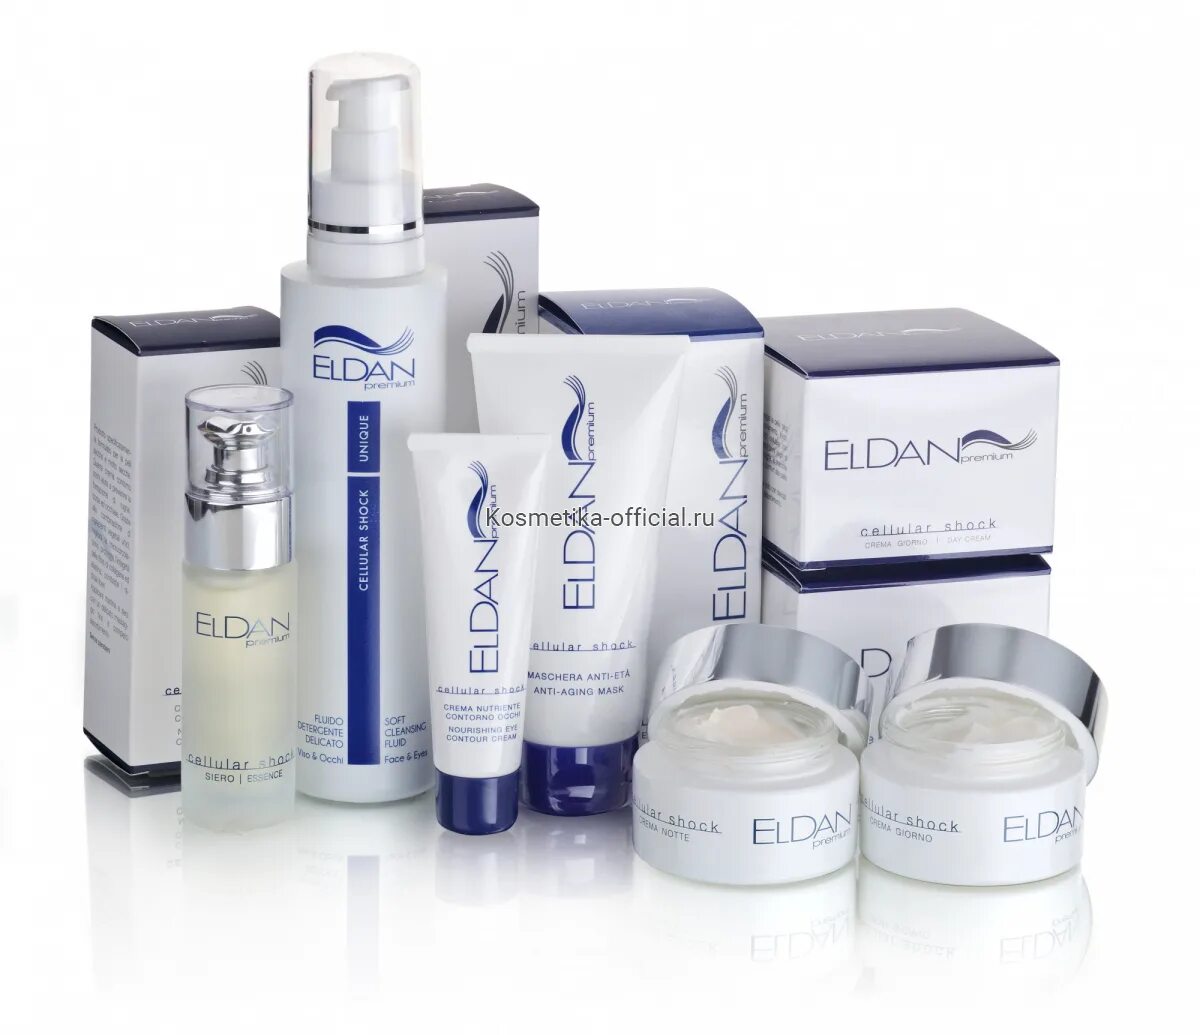 Купить косметику москва интернет магазин. Eldan Premium косметика для волос. Eldan Anti-age маска «Premium Cellular Shock» 250. Eldan Premium 40+. Aden Cosmetics.